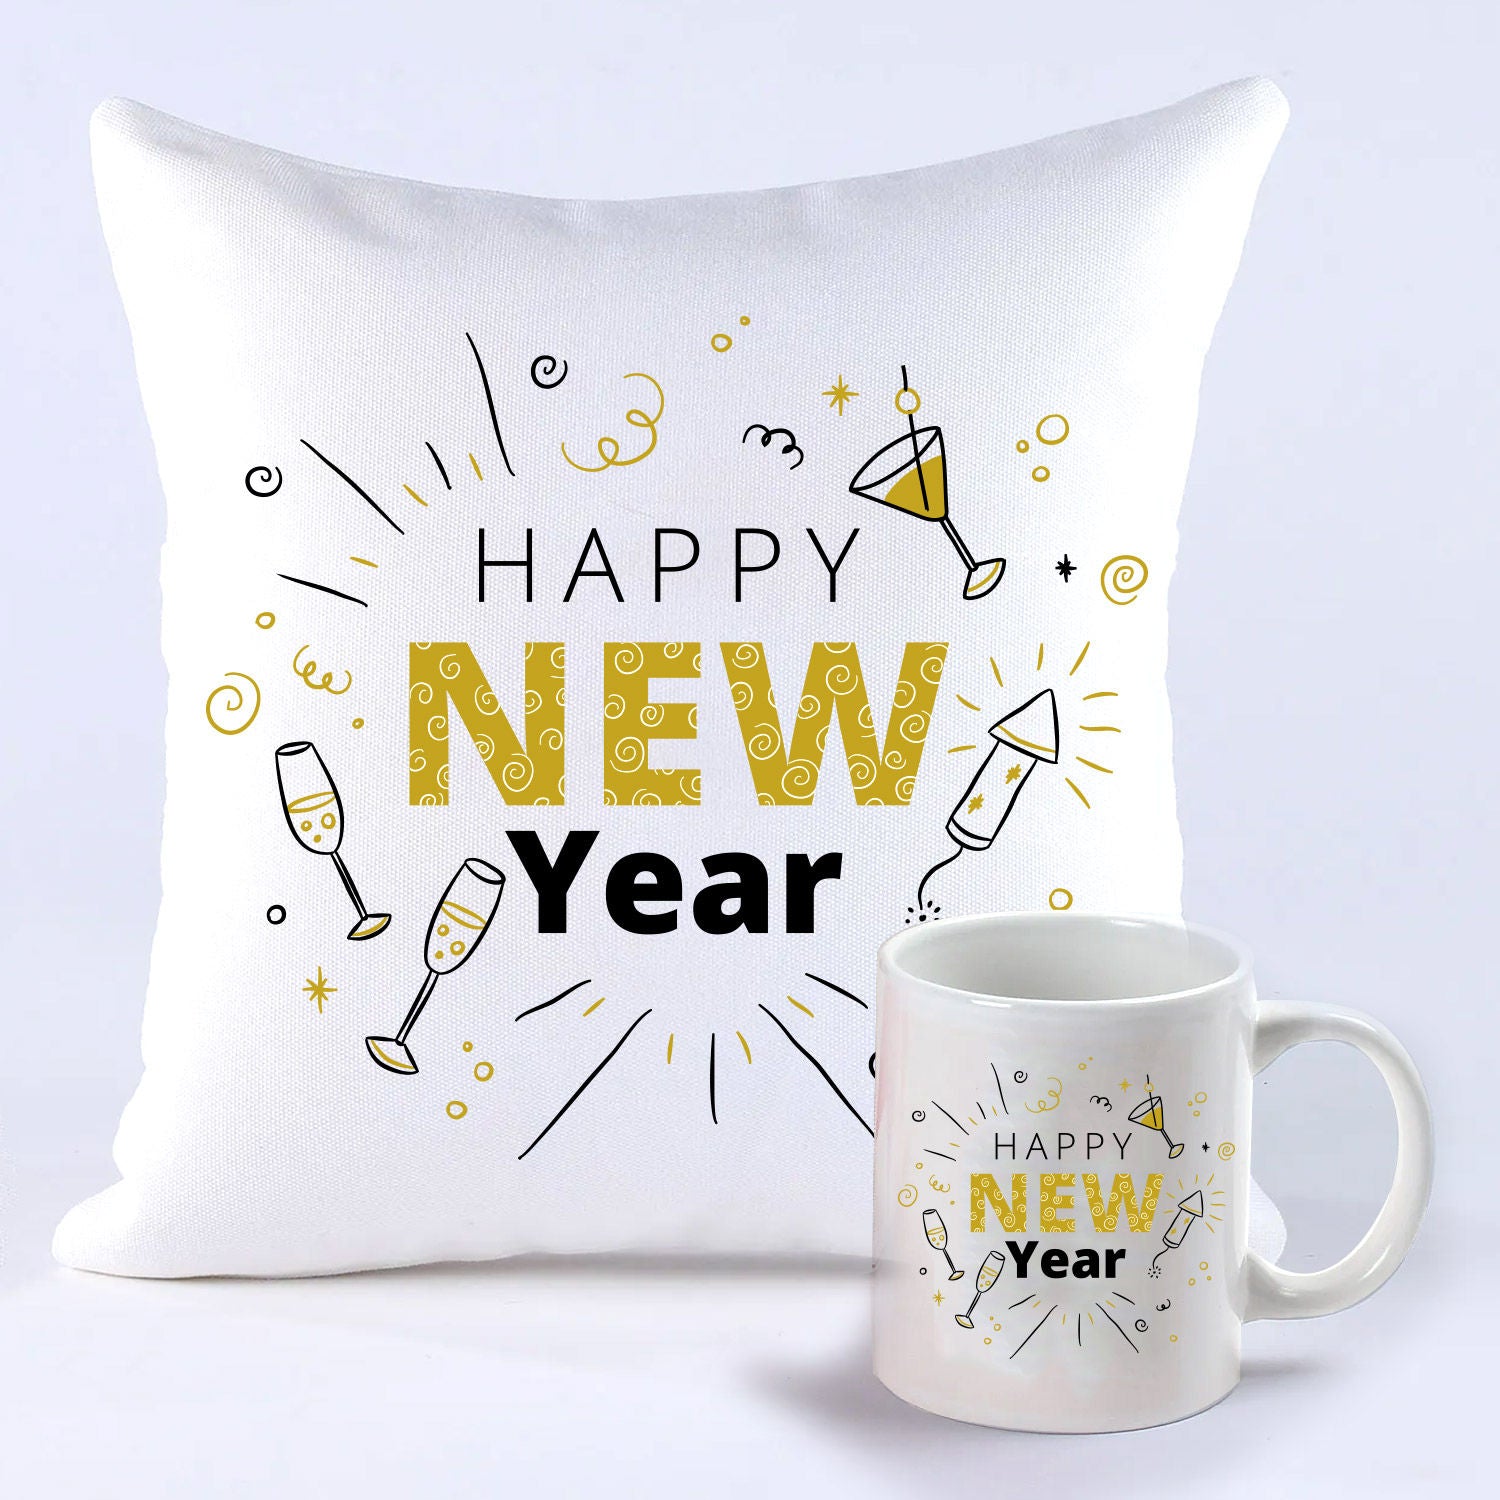 Happening New Year Greetings Mug And Cushion